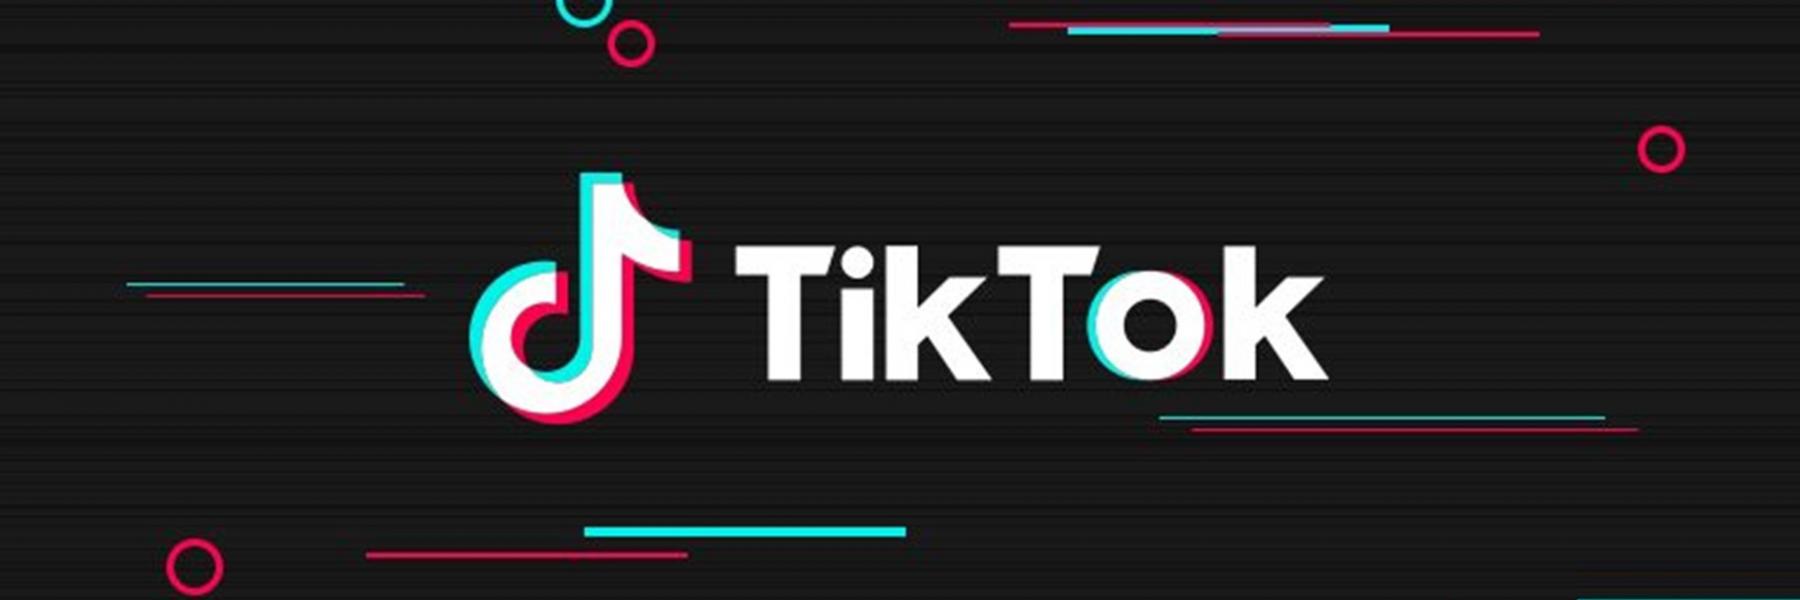 منصة "تيك توك" تتبرّع بمبلغ 375 مليون دولار لدعم الجهود في مكافحة فيروس كورونا